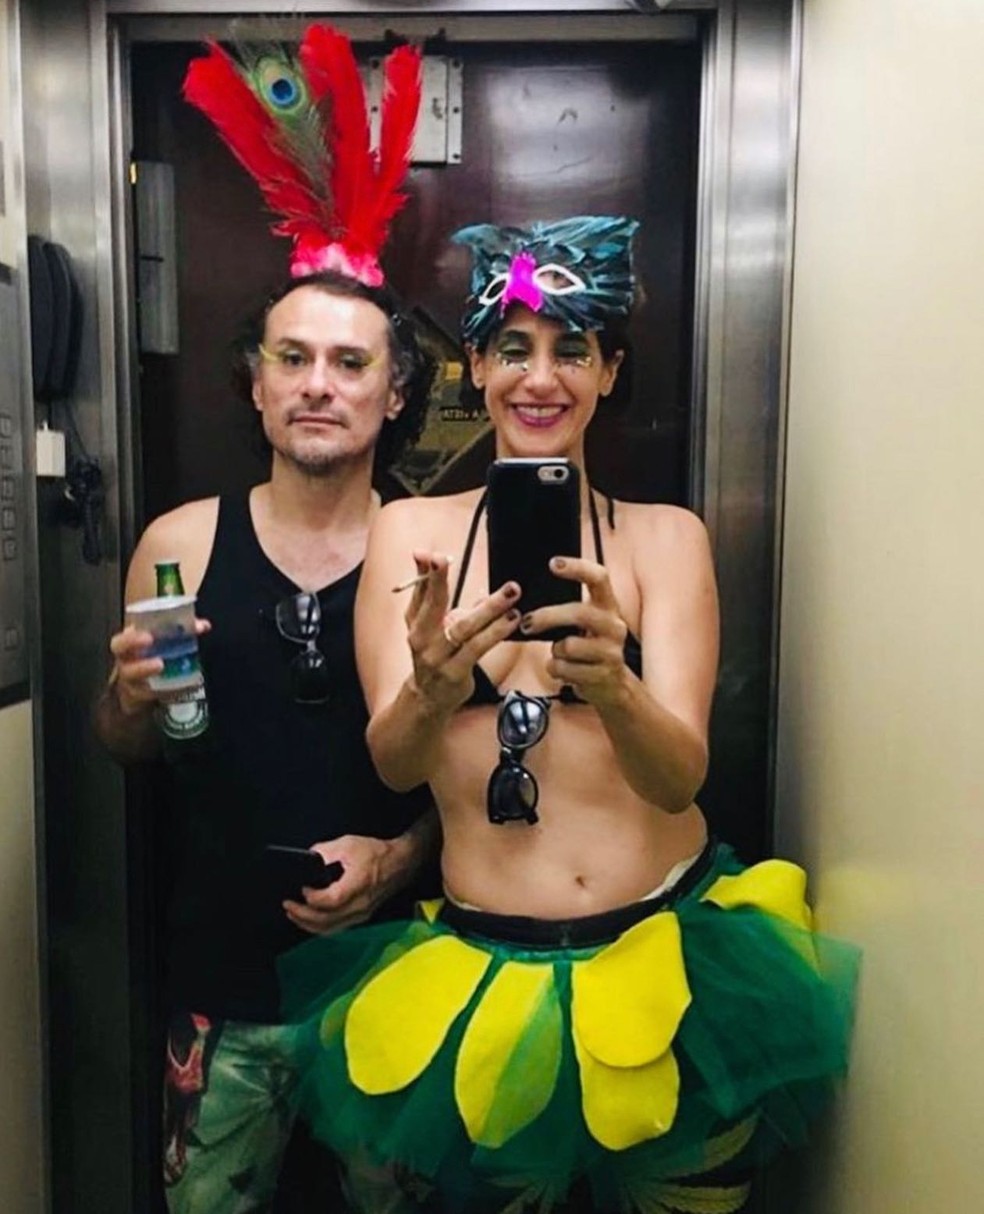 Mariana Lima e Enrique Diaz — Foto: Instagram